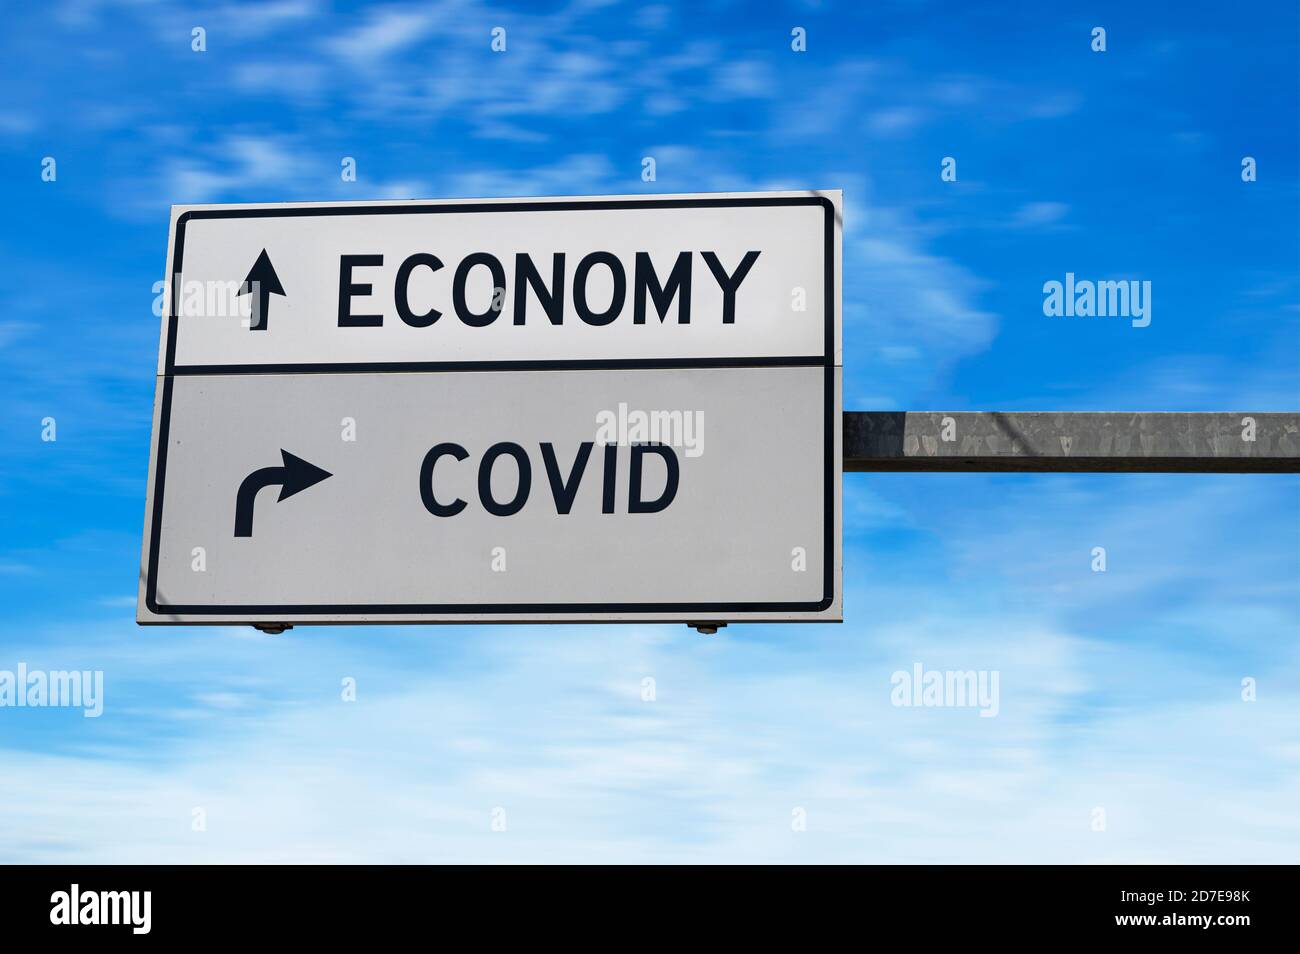 Economy im Vergleich zu COVID. Weiße zwei Straßenschilder mit Pfeil auf Metallmast. Richtungsstraße. Kreuzung Straßenschild, Zwei Pfeil. Blauer Himmel Hintergrund. Stockfoto